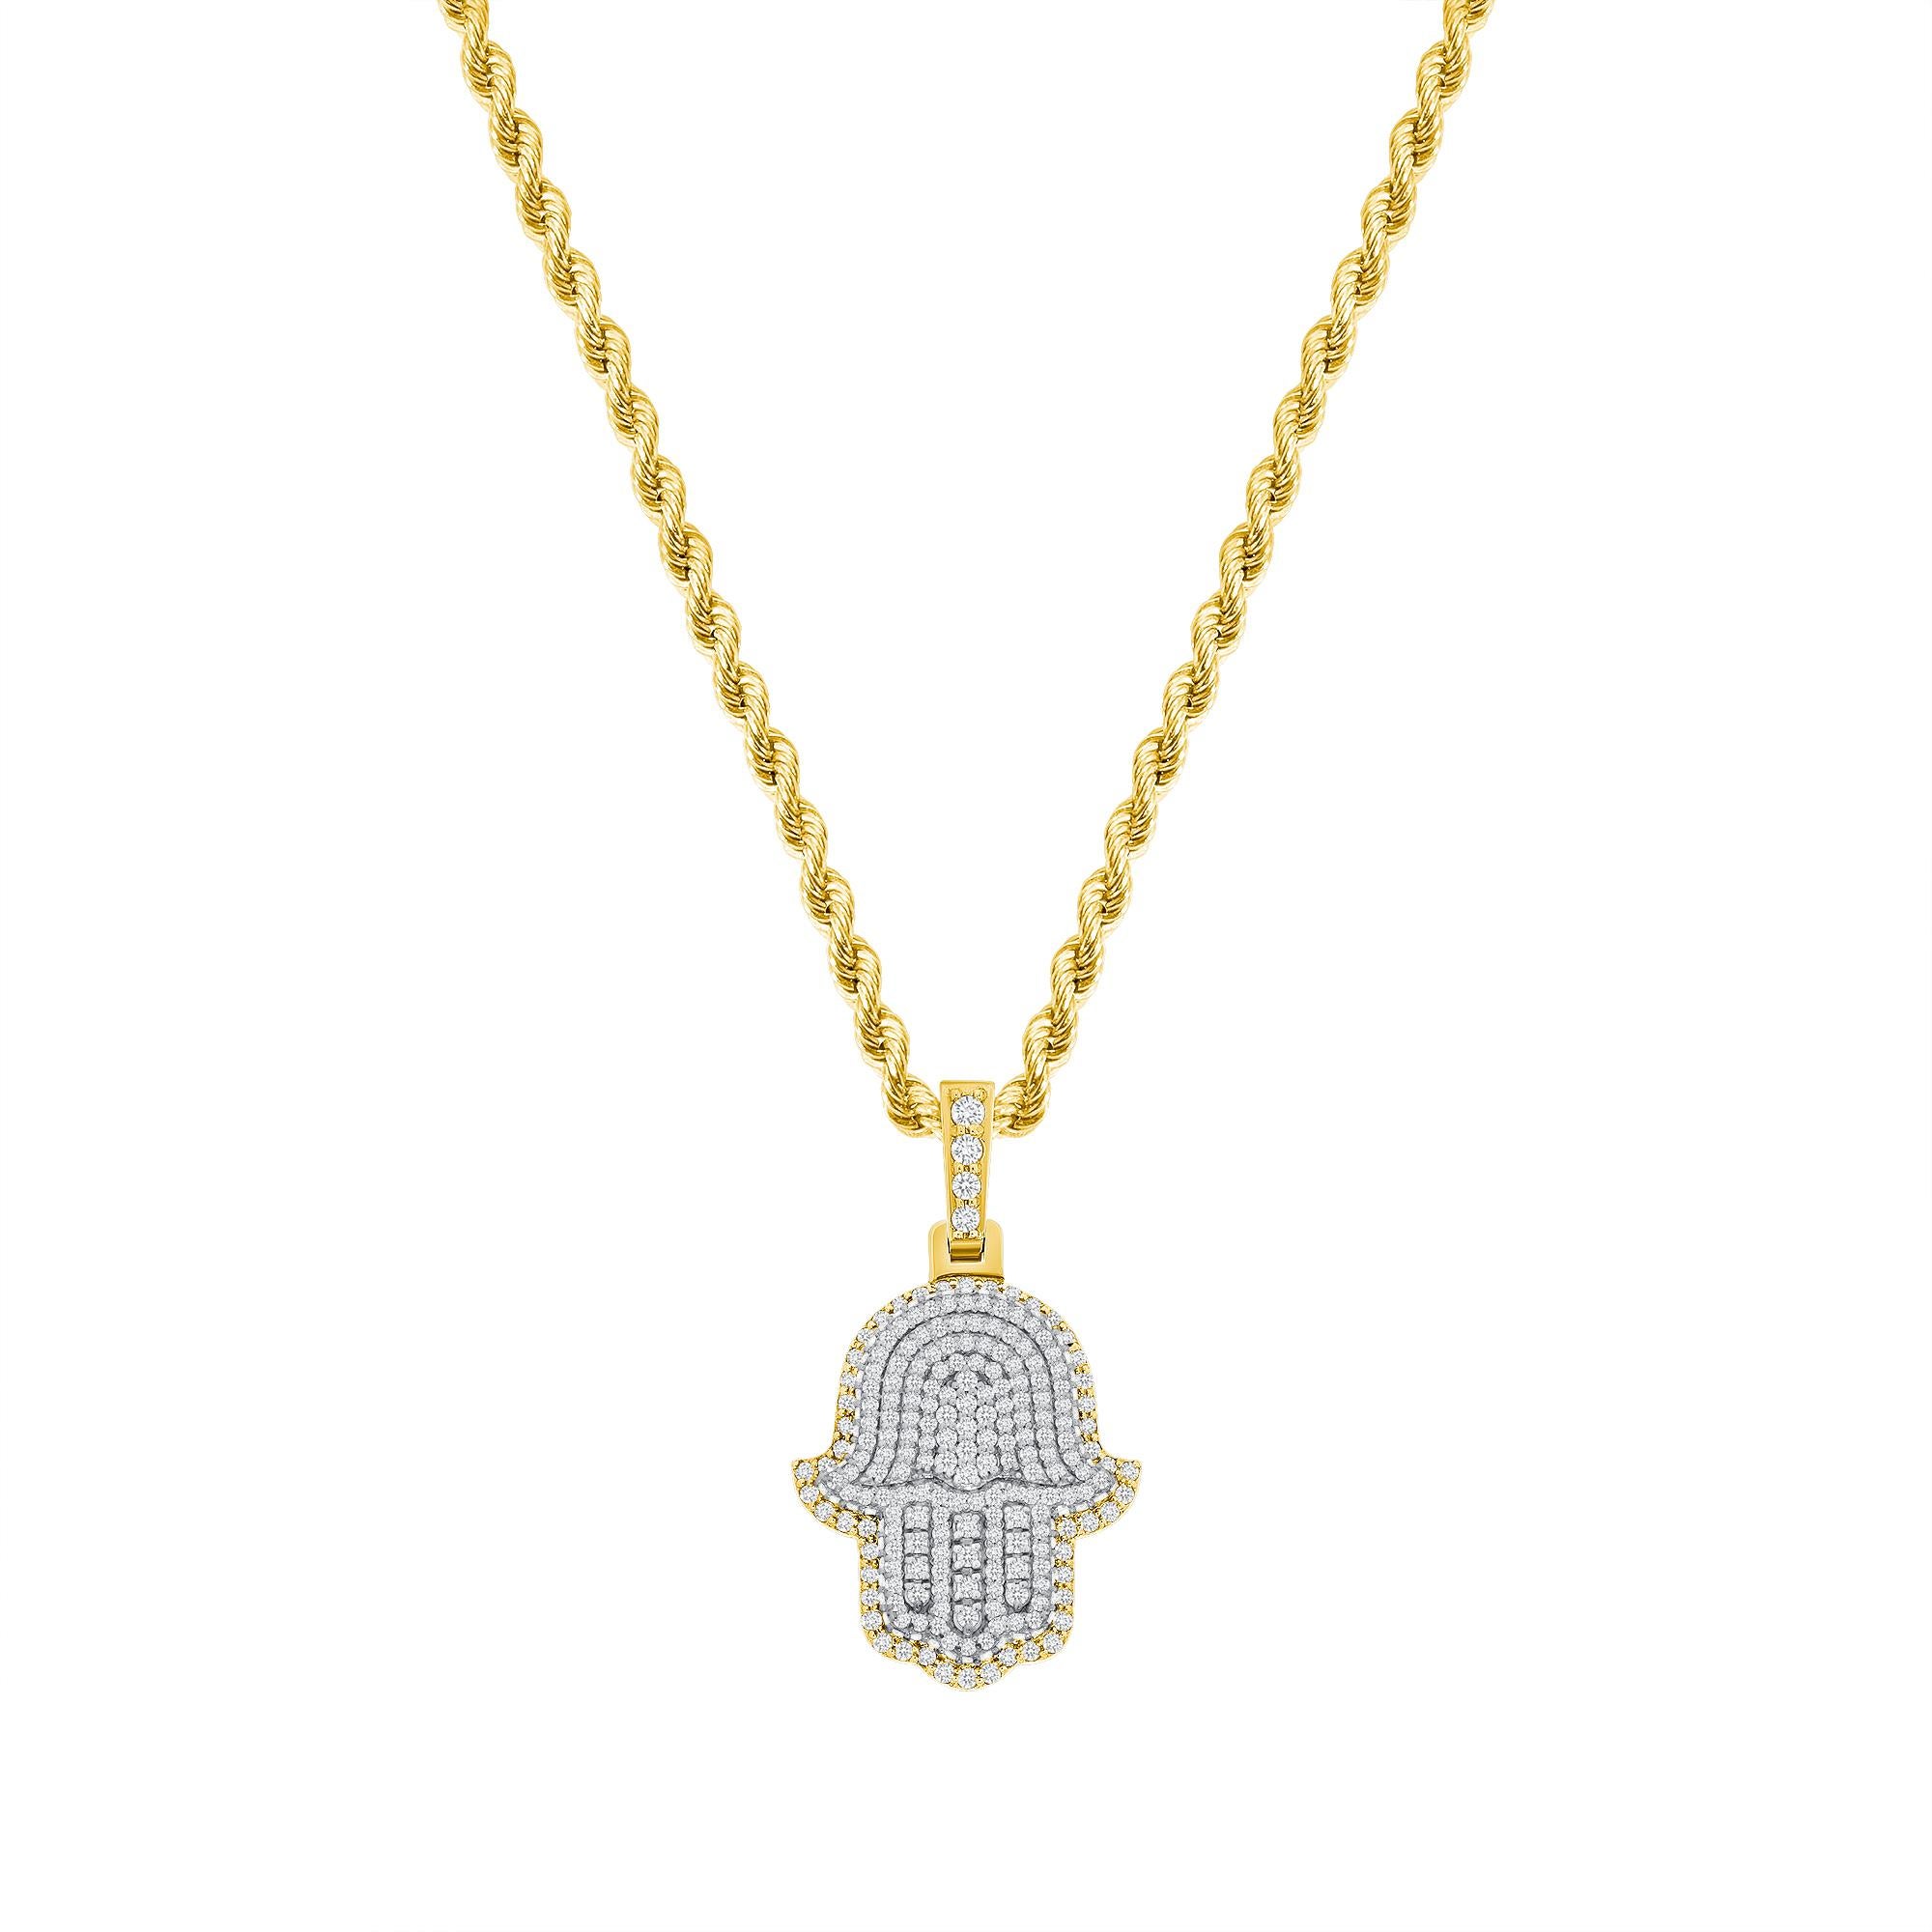 Diese Hamsa-Diamant-Halskette bietet sowohl einen spirituellen als auch einen modischen Trend-Look. 

Metall: 14k Gold
Diamant-Schliff: Rund
Diamant Karat gesamt: 2 Karat
Diamant Reinheit: VS
Farbe des Diamanten: F-G
Länge der Halskette: 18